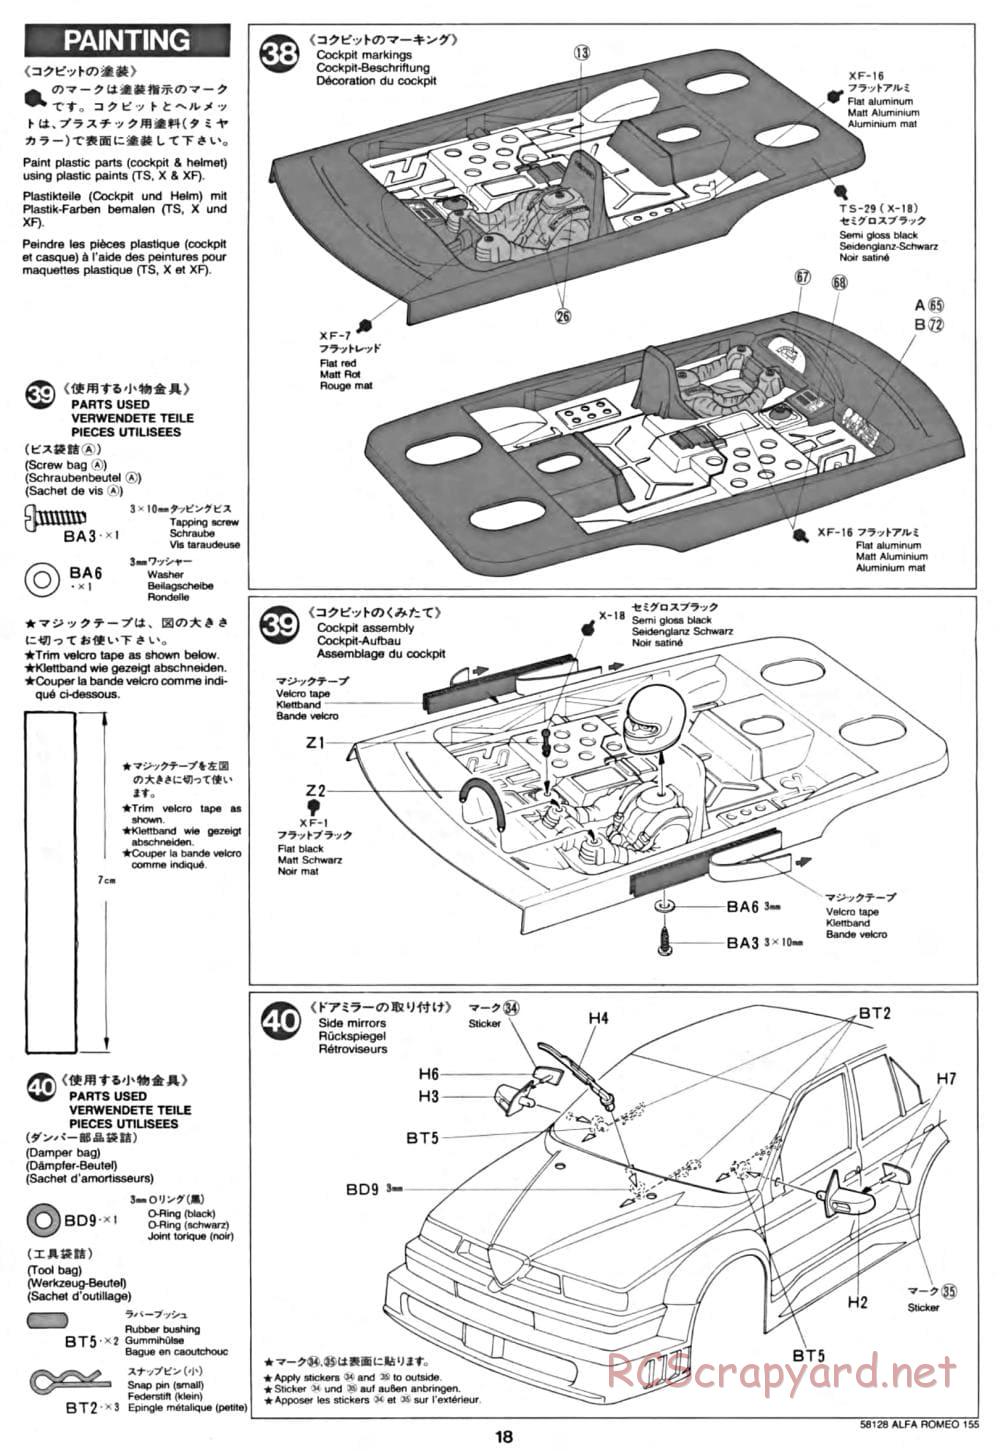 Tamiya - Alfa Romeo 155 V6 TI - TA-02 Chassis - Manual - Page 18